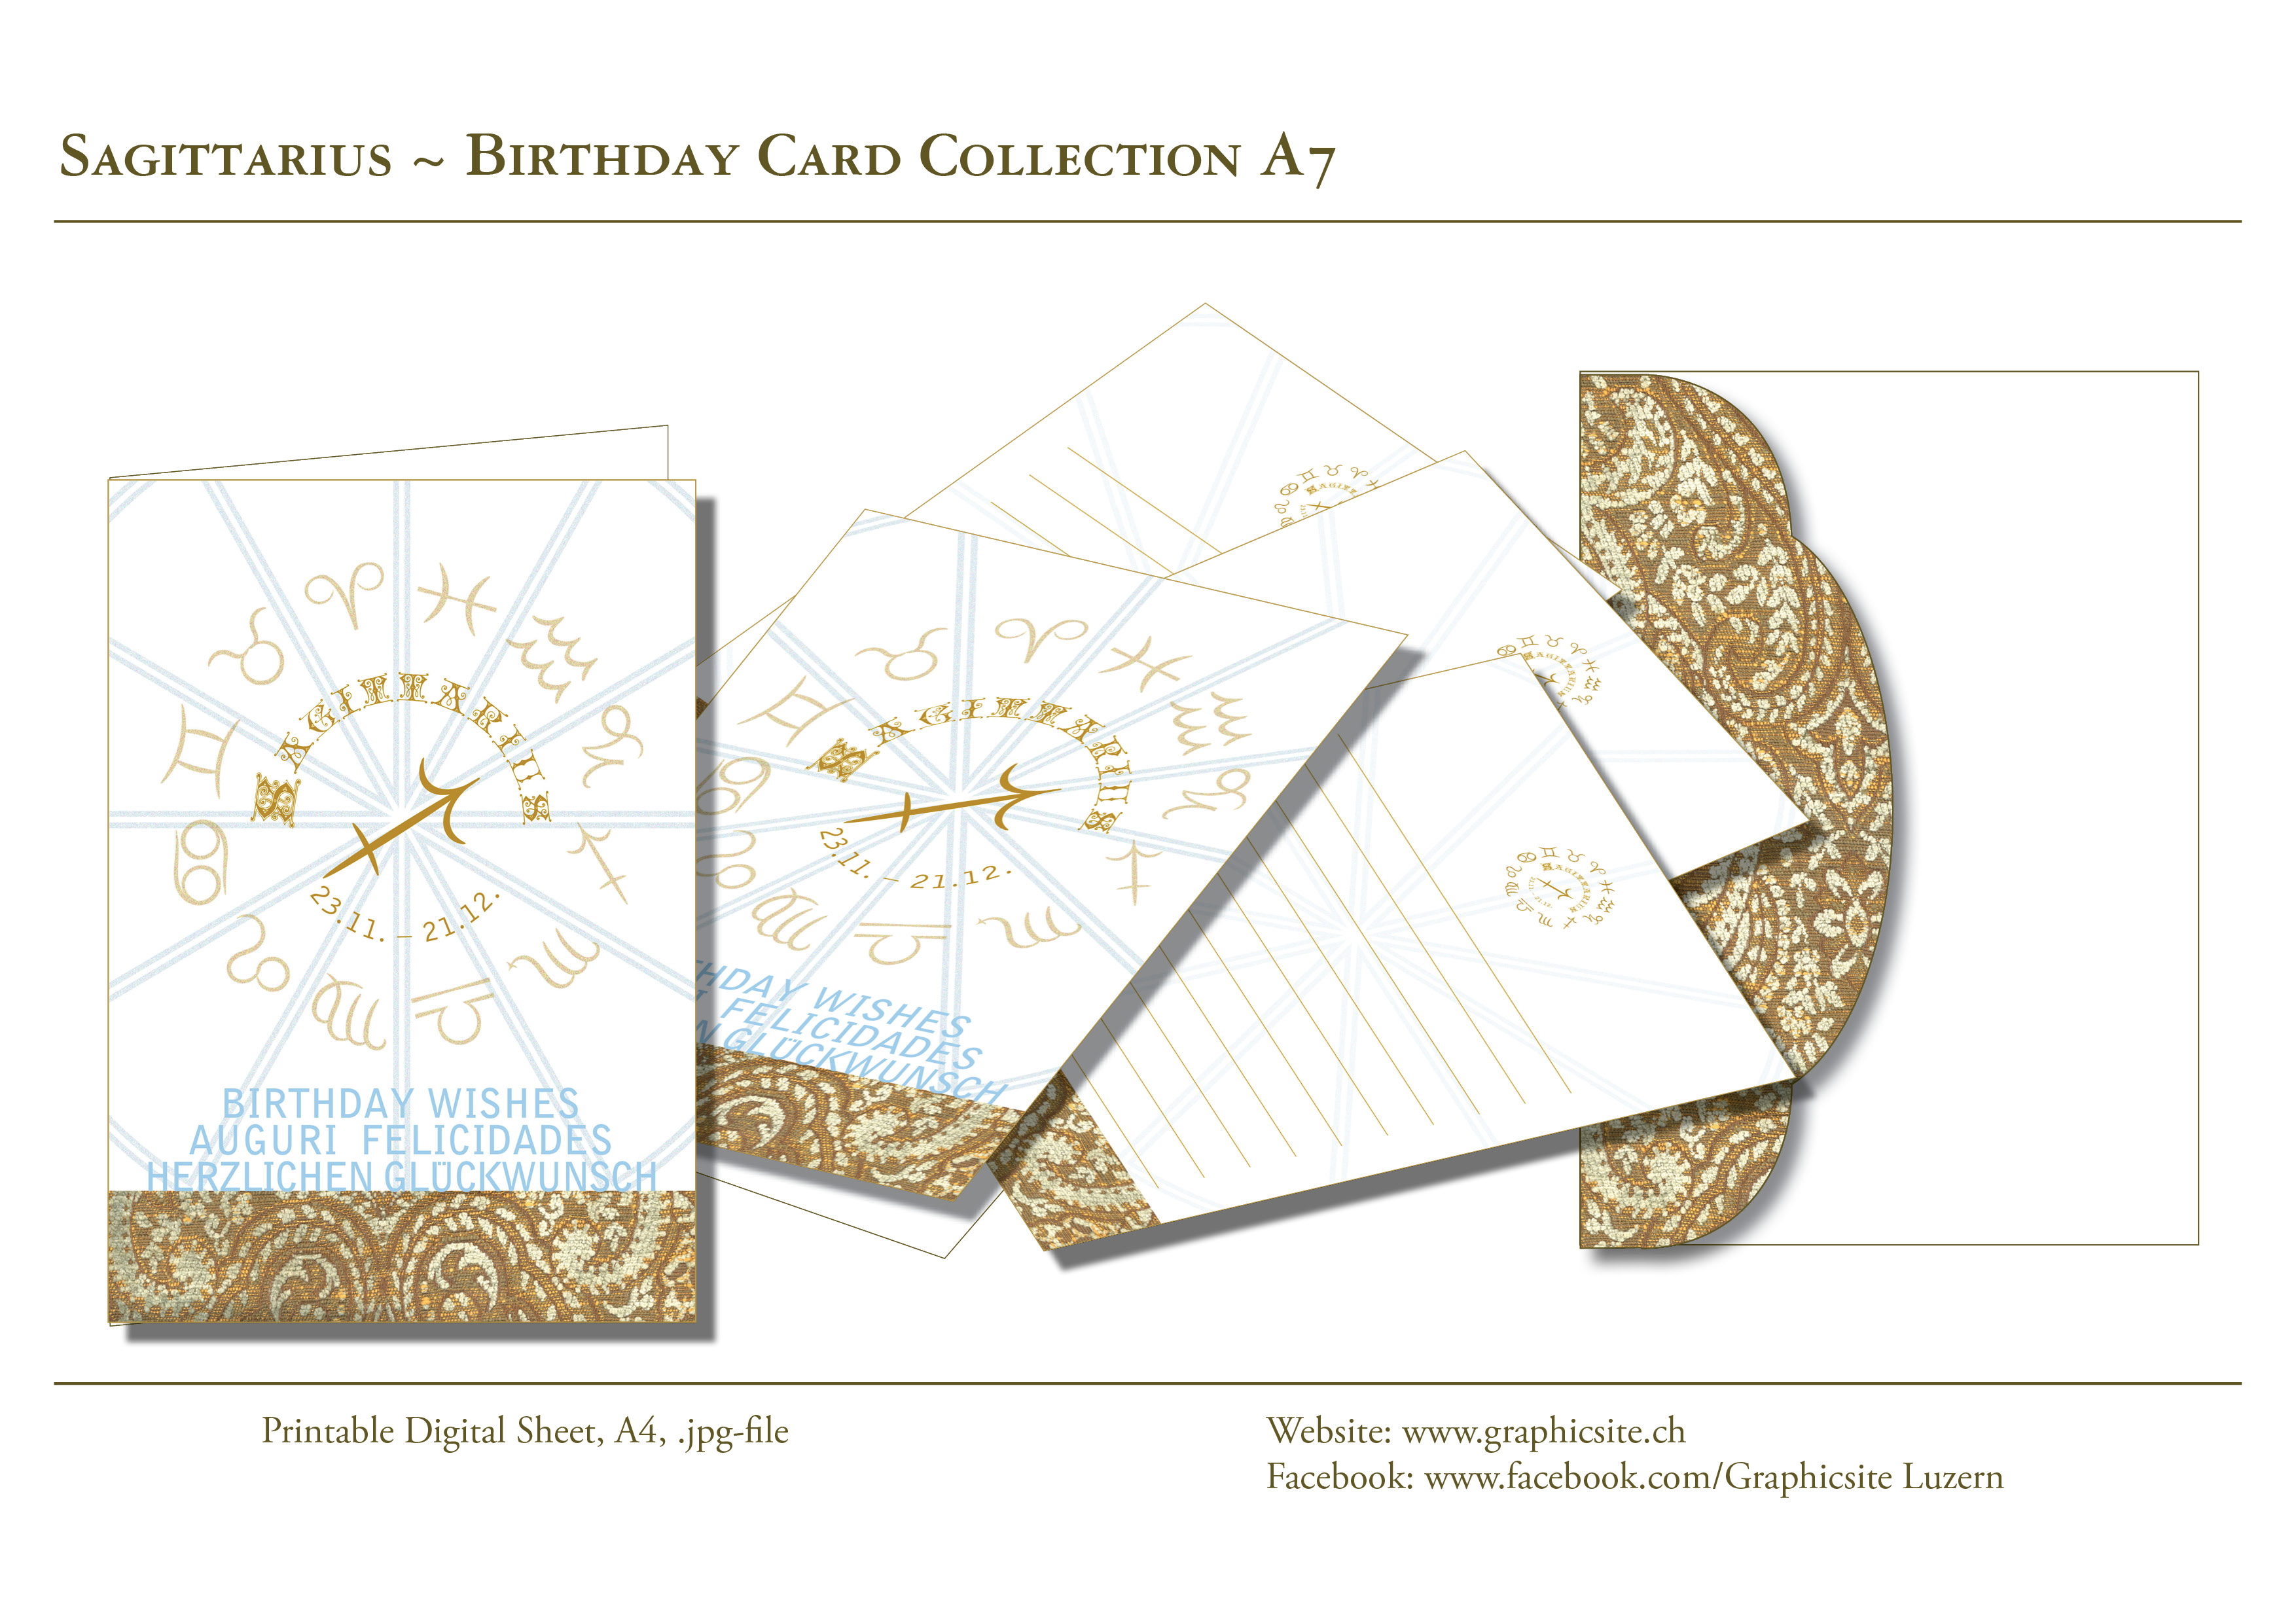 Druckbare Karten - selber drucken - Karten A7 - Grusskarten - Geburtstagskarten - Geschenkkarten - Horoskop - Sternzeichen - Schütze - Grafik Design Luzern, Grafiker Luzern, Schweiz